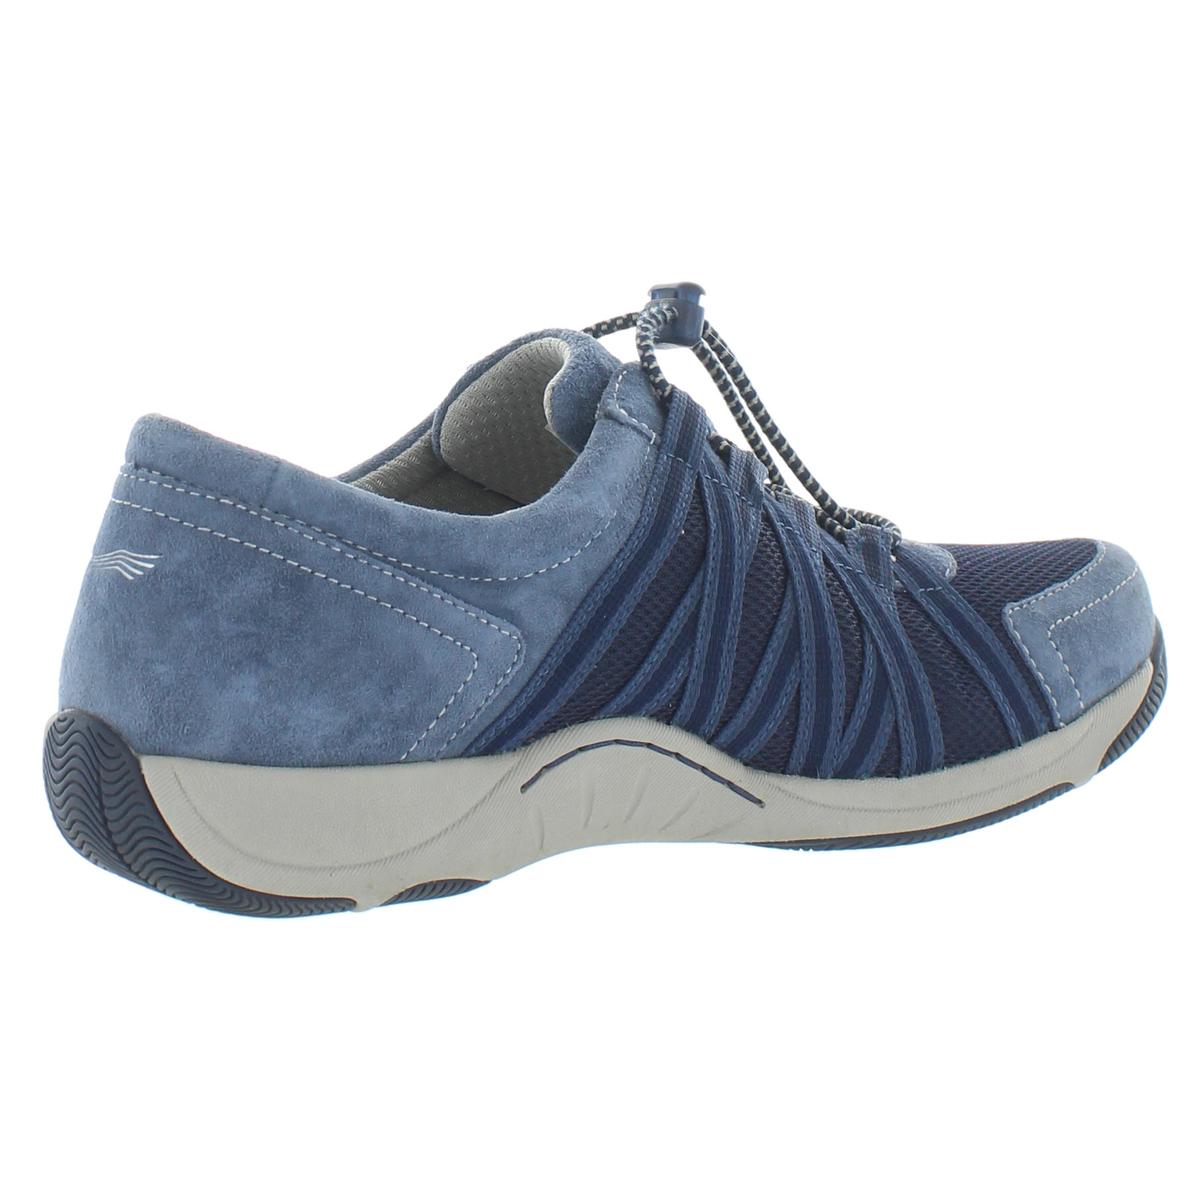 Dansko Womens Blue Suede Athletic Shoes Sneakers 39 Medium (B,M) BHFO ...